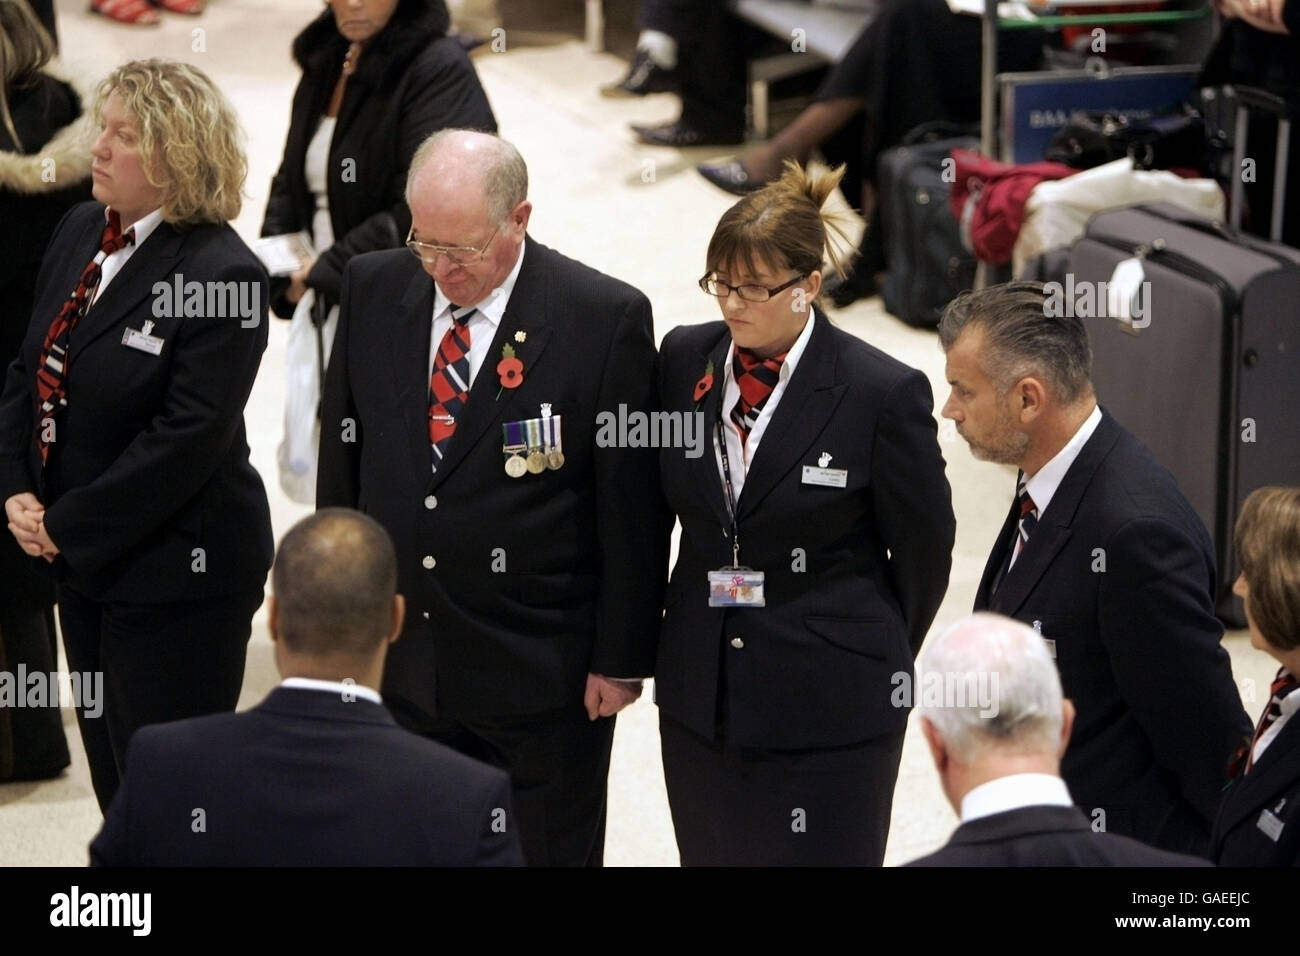 Le personnel d'enregistrement de British Airways se tient pendant le silence de 2 minutes du dimanche du souvenir dans le terminal 1 de Heathrow, à l'ouest de Londres. Banque D'Images